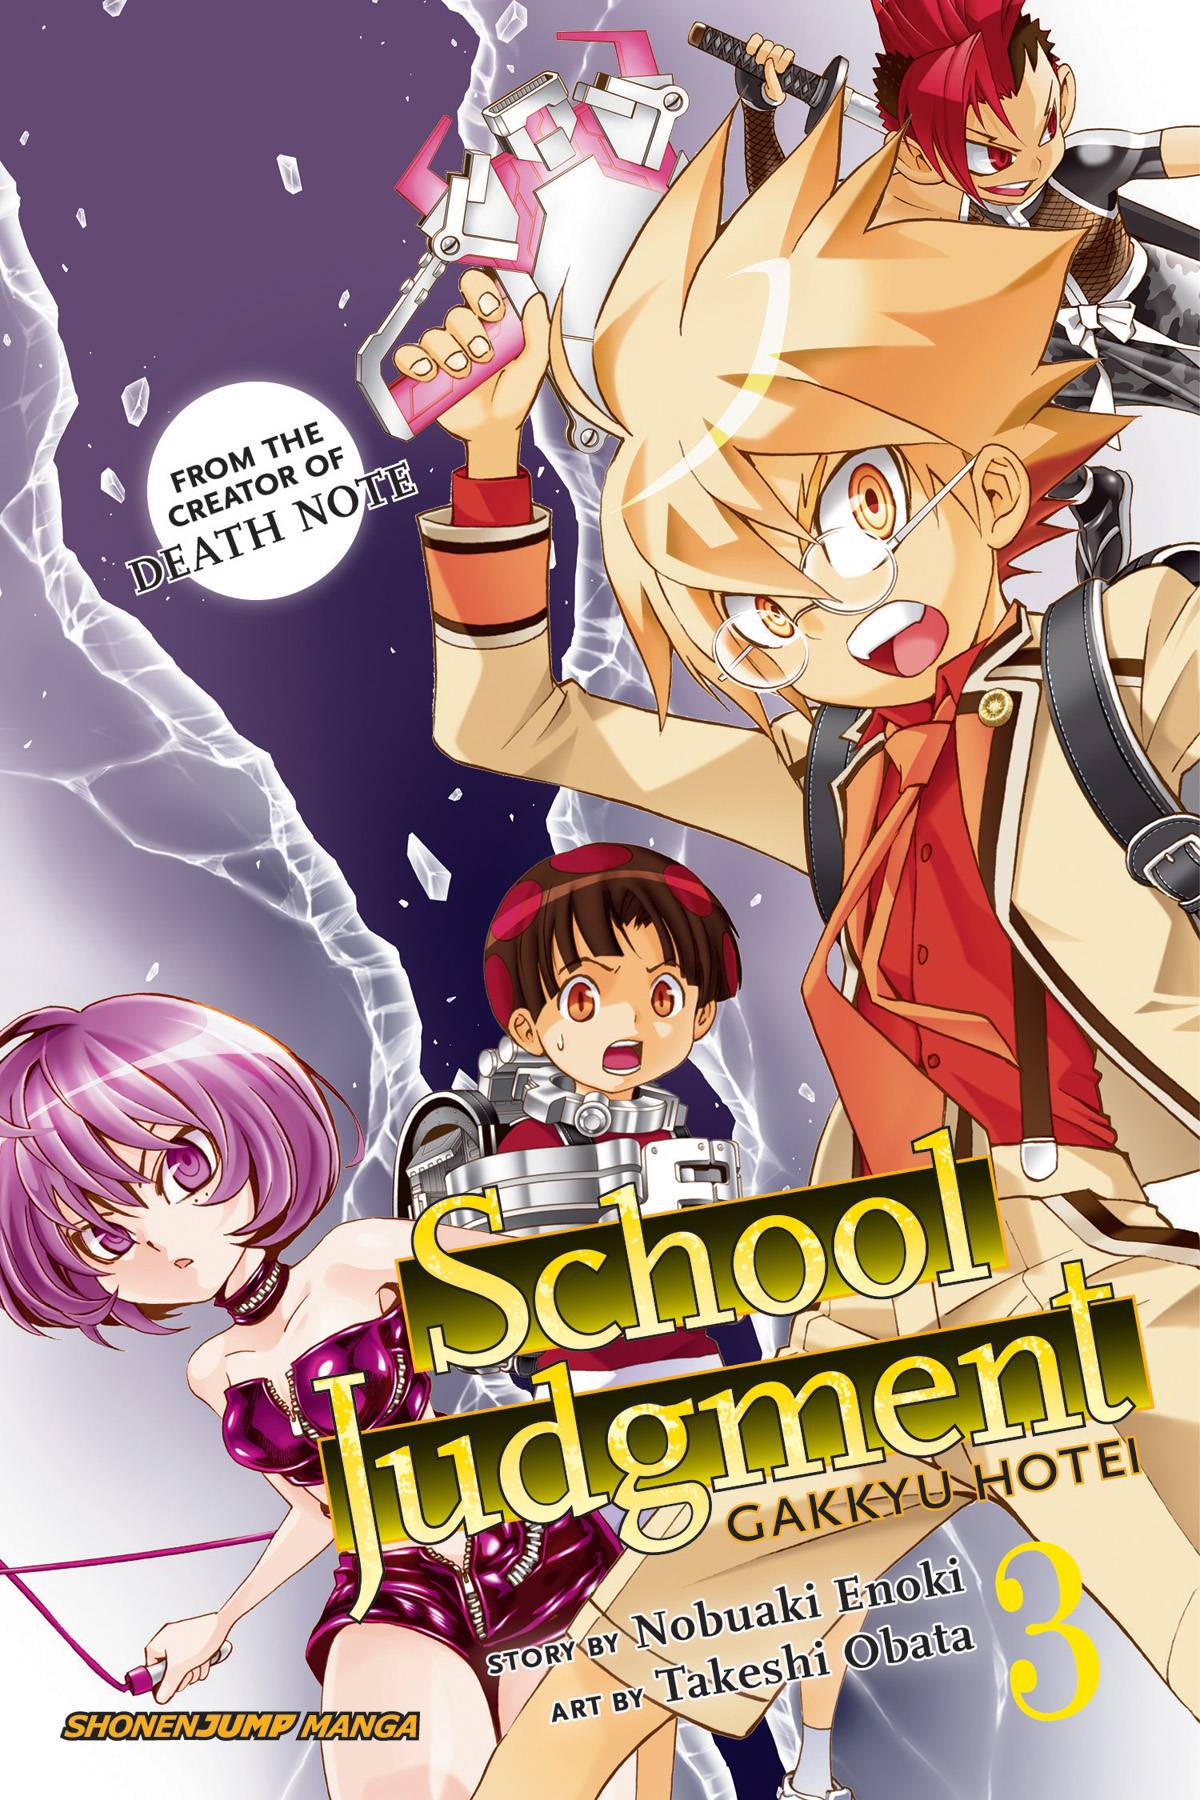 School Judgment Gakkyu Hotei Manga Volume 3